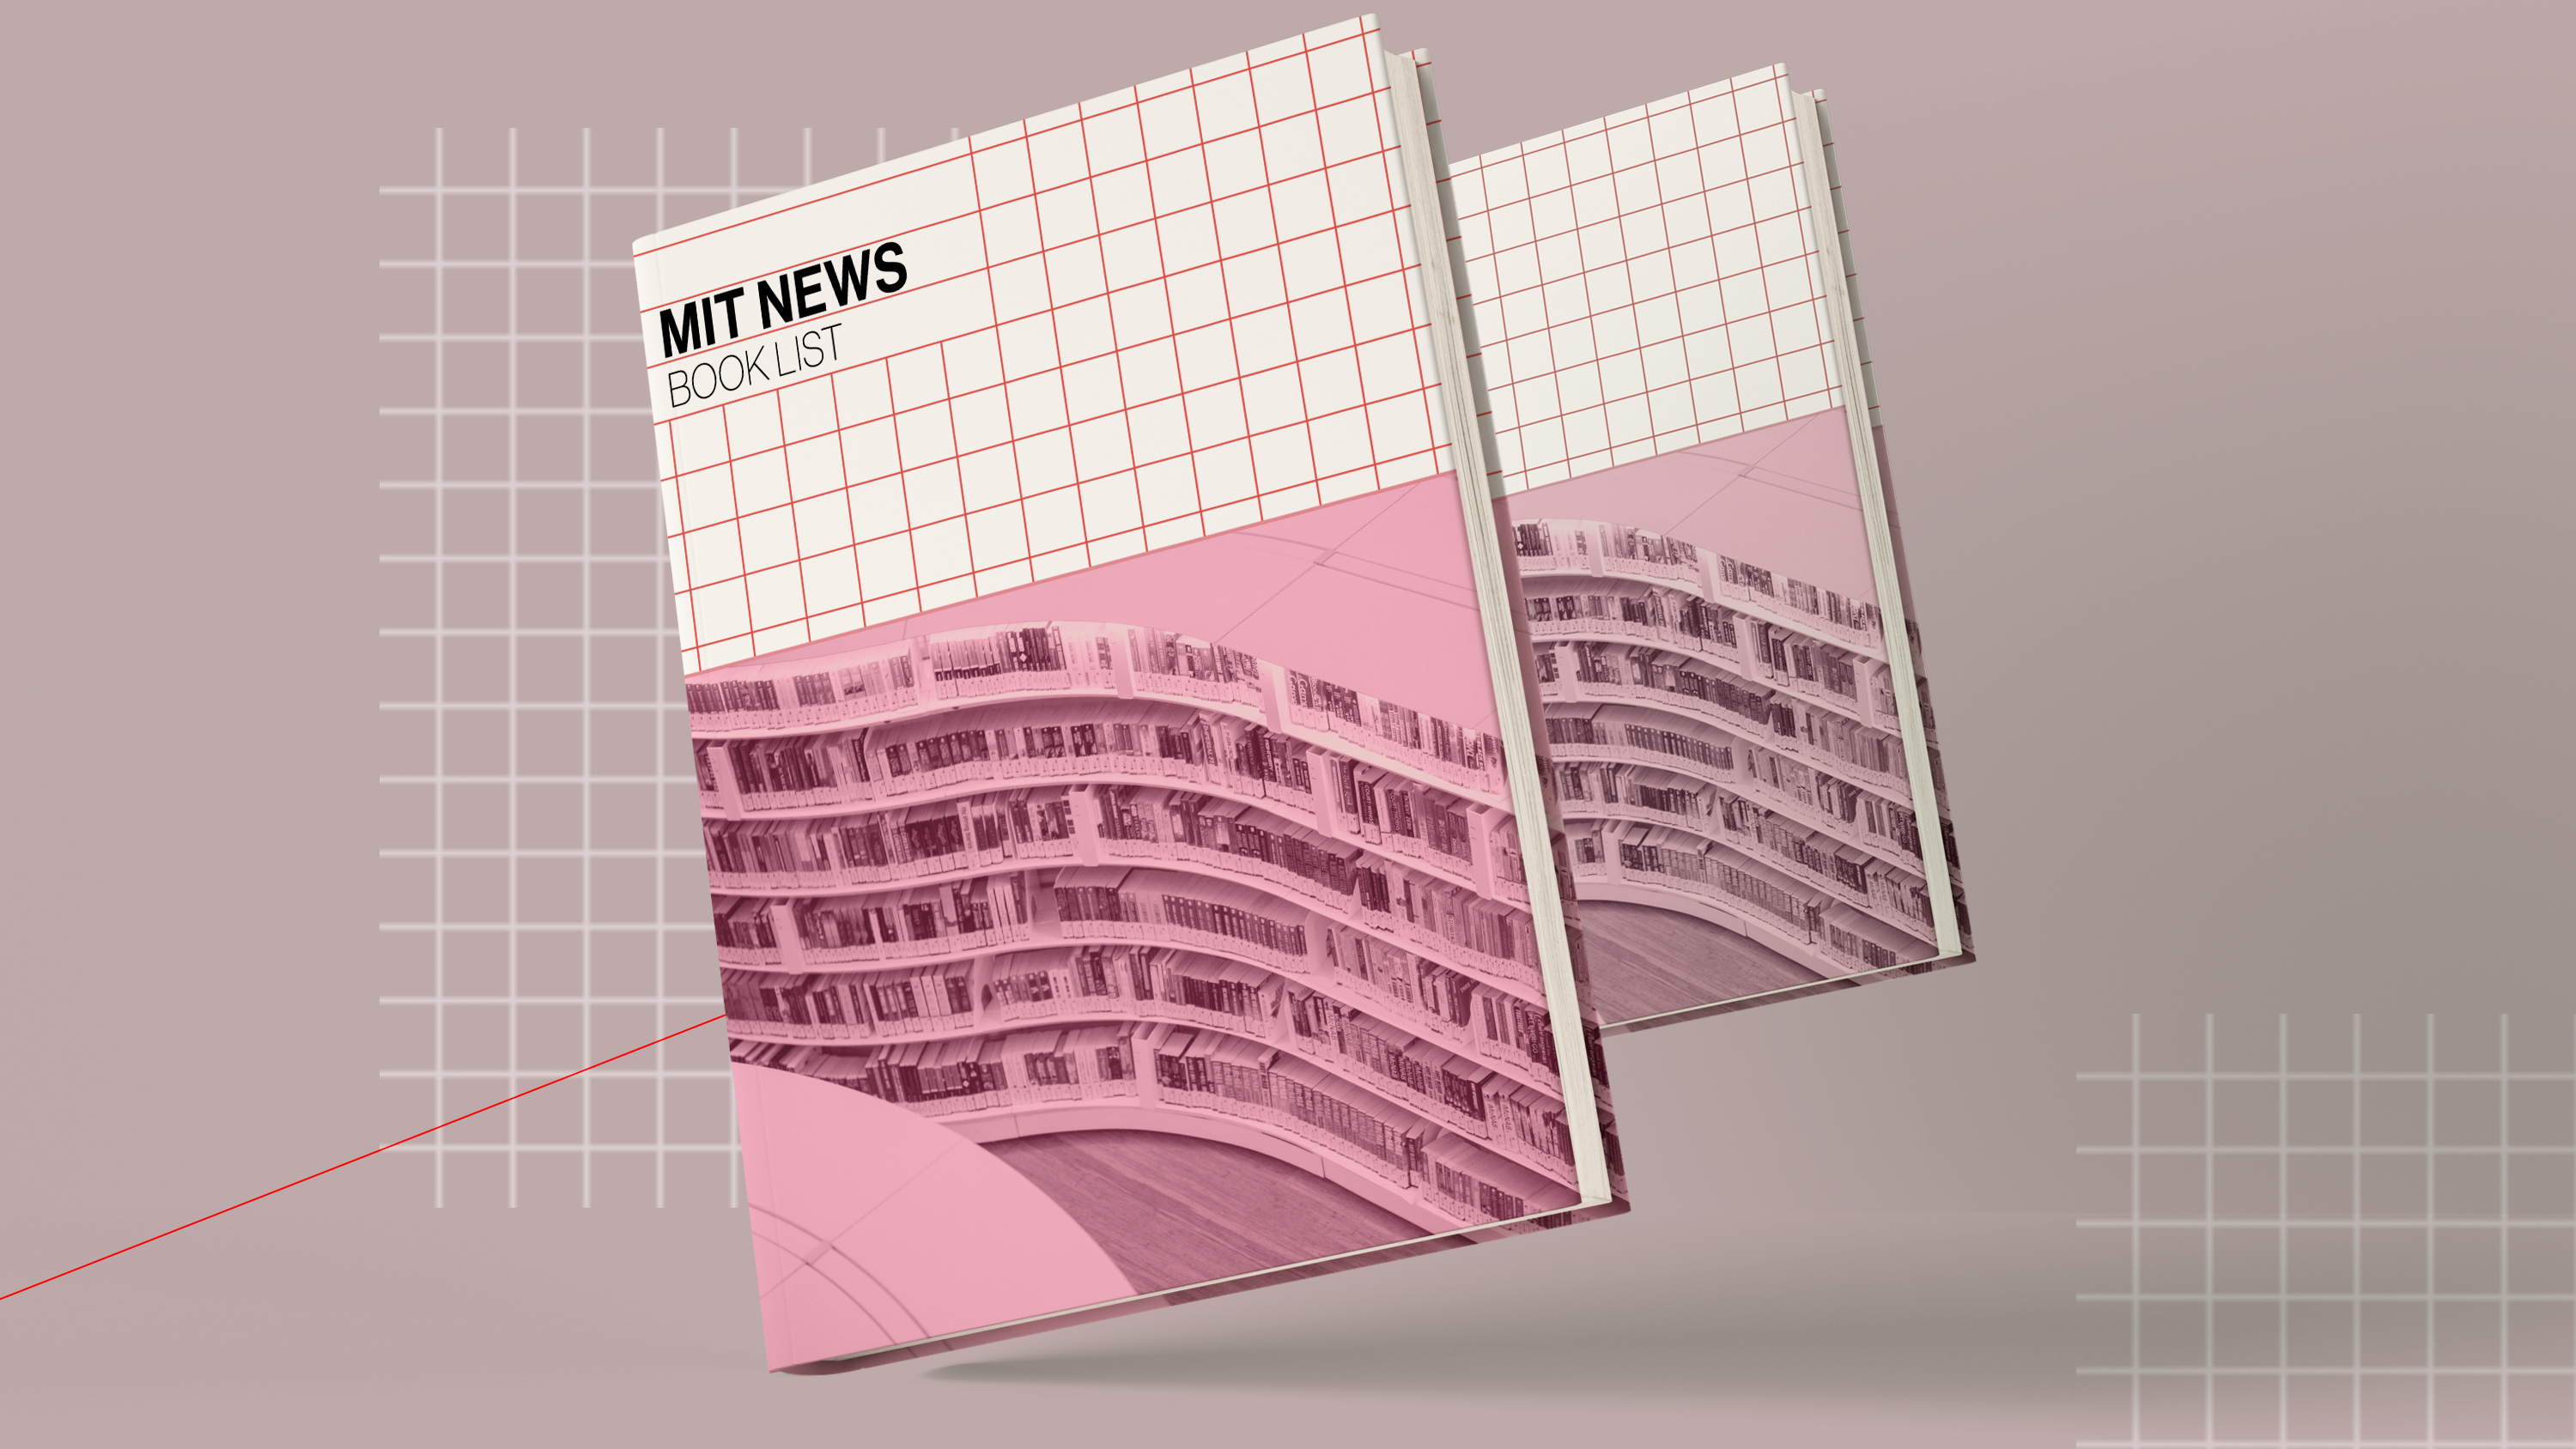 MIT News book list